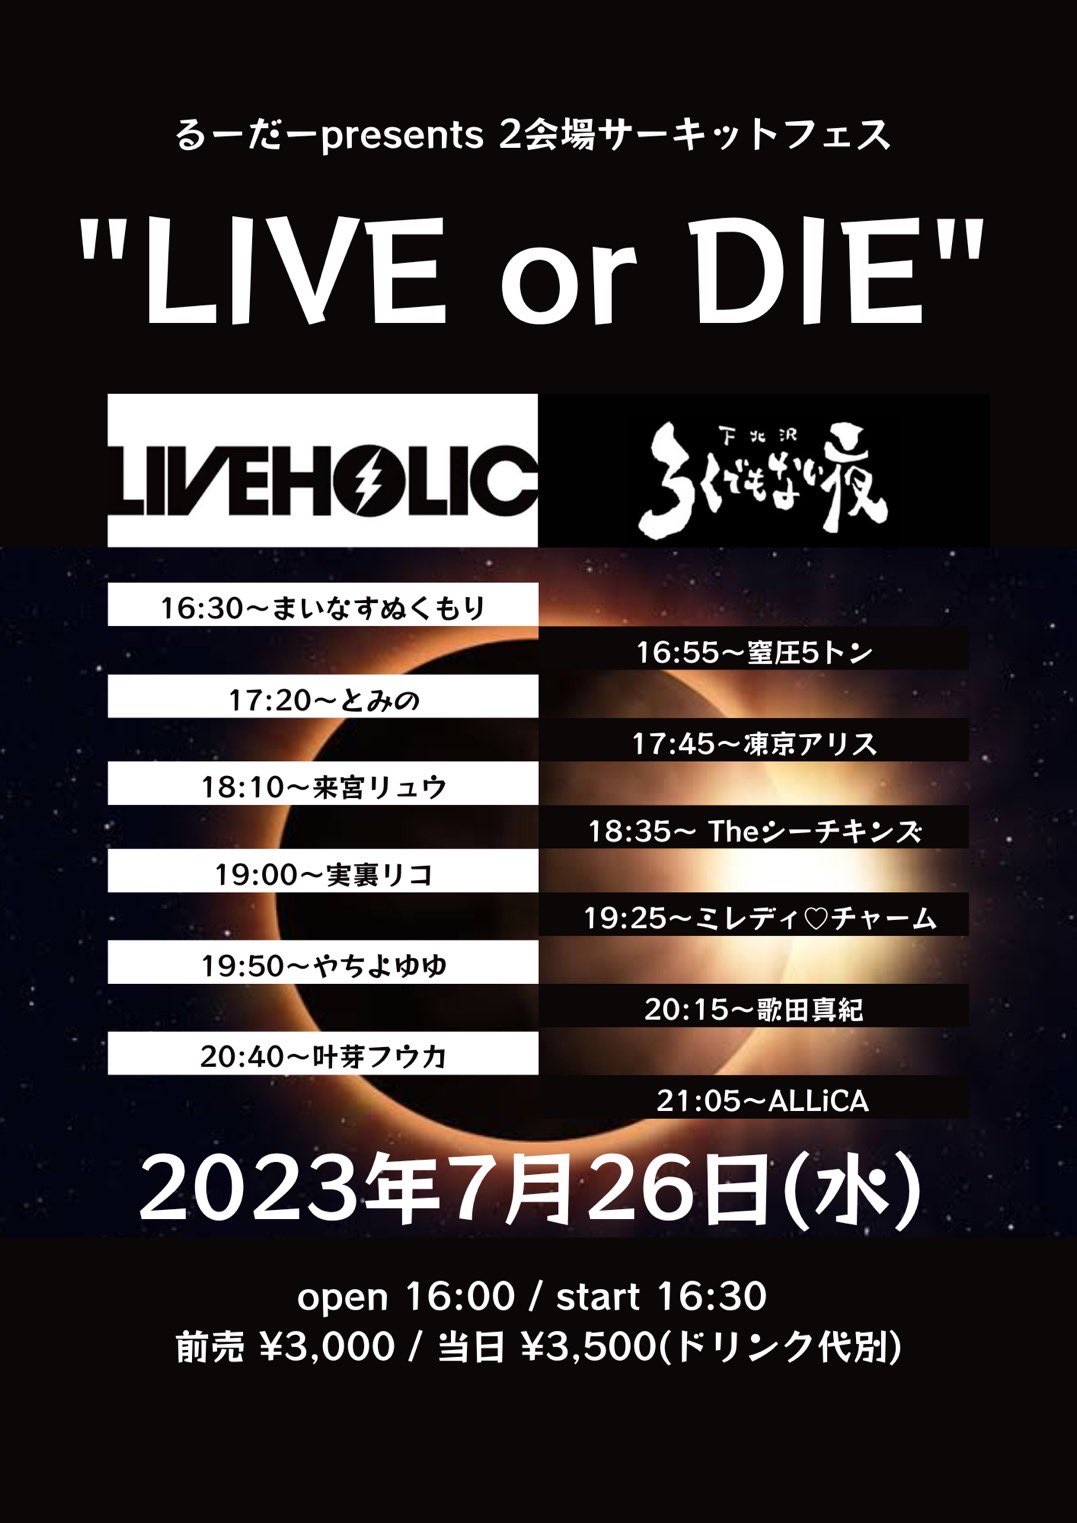 るーだーpresents 2会場サーキットフェス “LIVE or DIE”